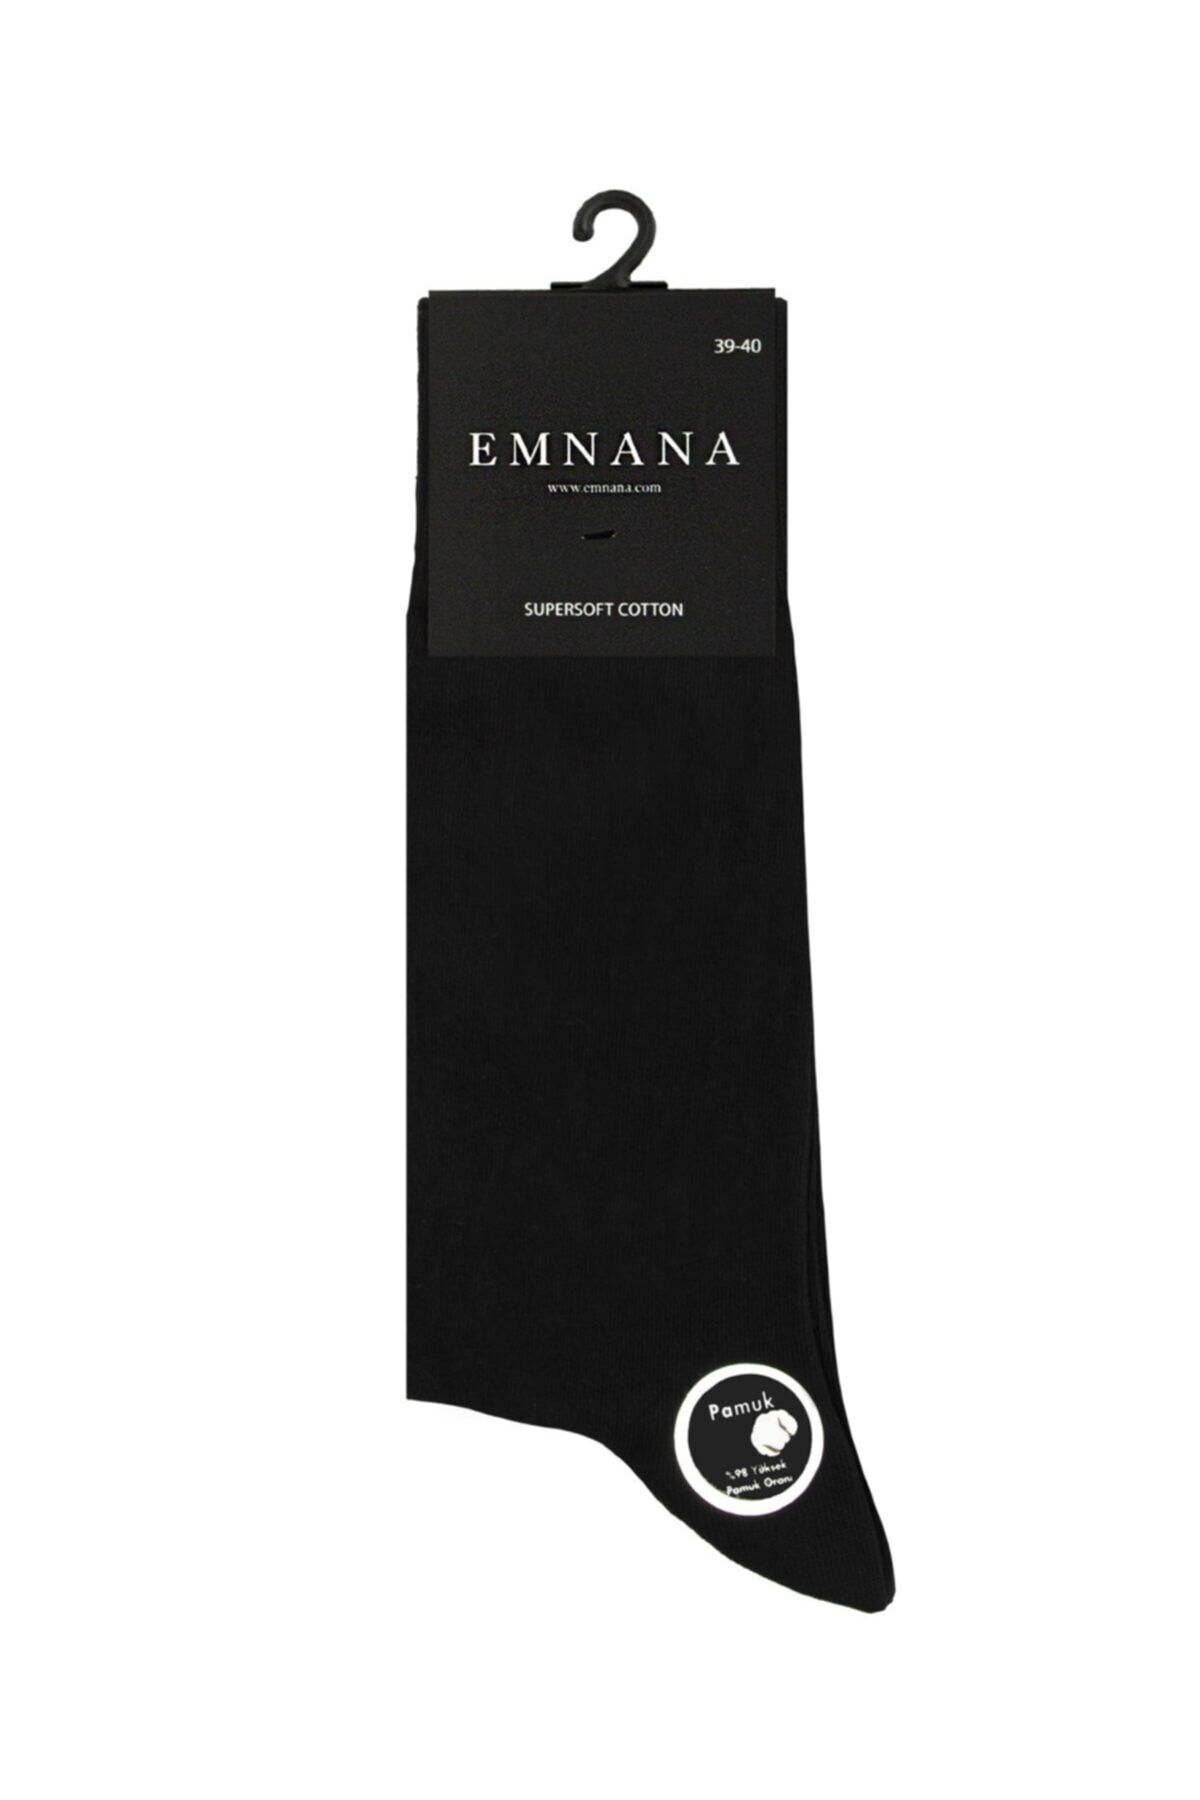 EMNANA 5 Adet Yüksek Pamuk Oranlı Erkek Çorap - Siyah